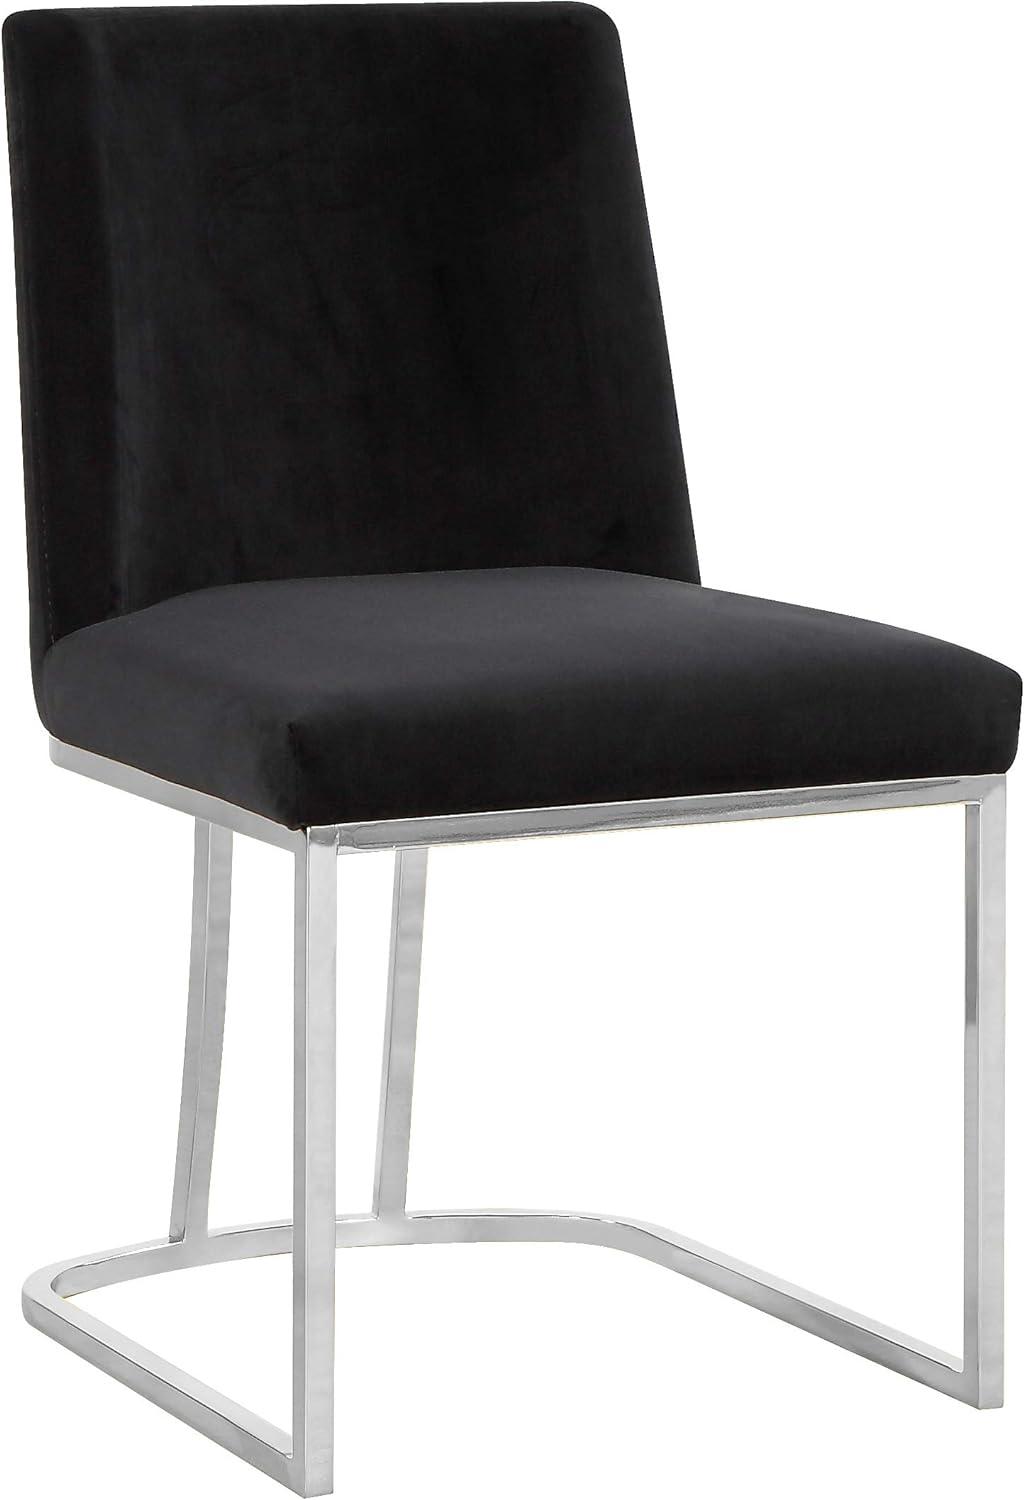 Velvet Upholstered Side Chair in Black with Chrome Metal Frame